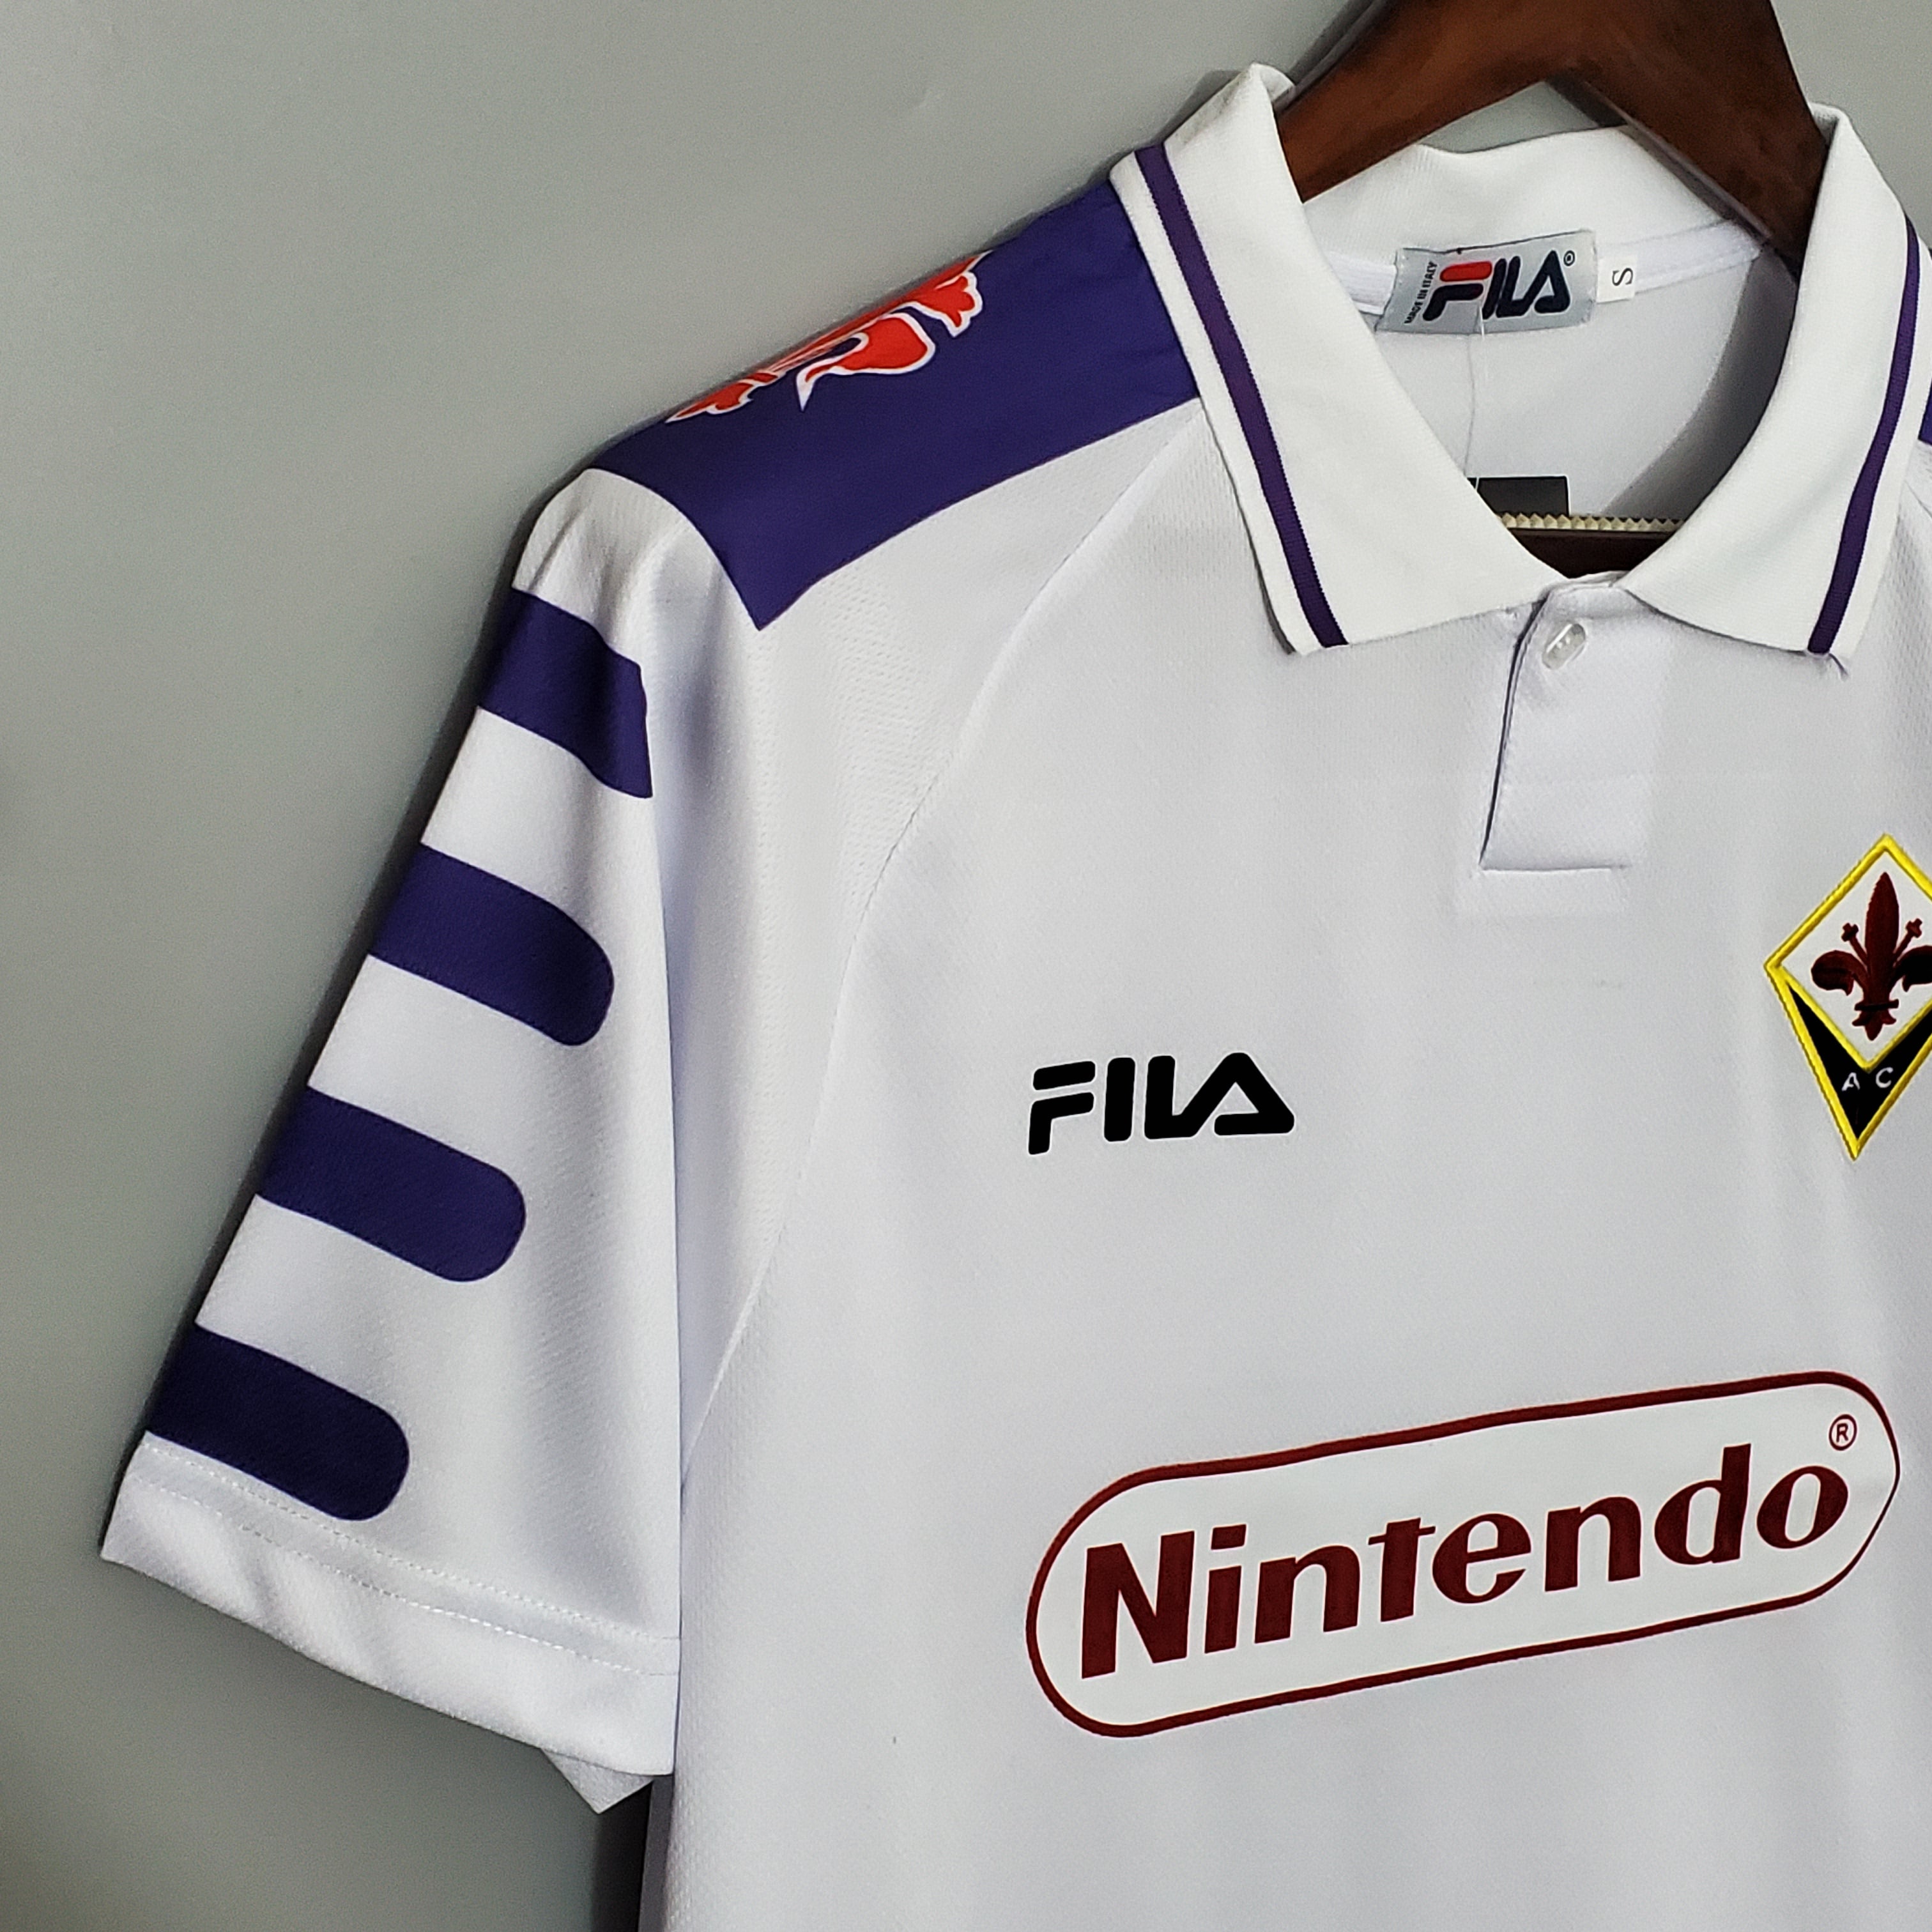 Fiorentina 1998 Away Jersey